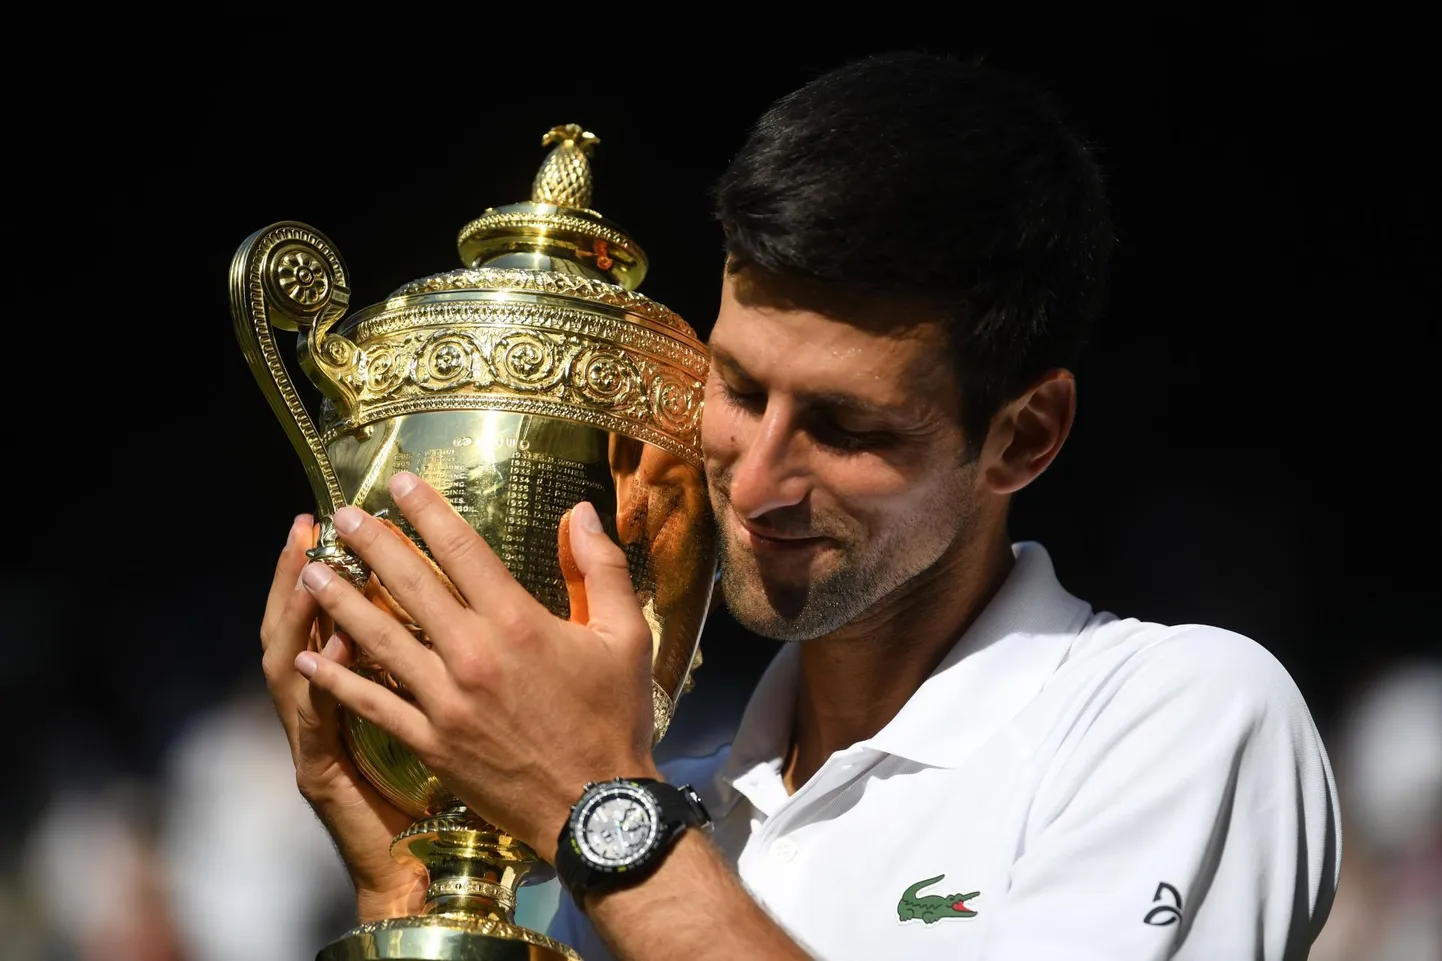 Novak Djokovic embab karjääri neljandat Wimbledoni võidutrofeed. Lapsena meeldis talle neid ise erinevatest materjalidest meisterdada. 